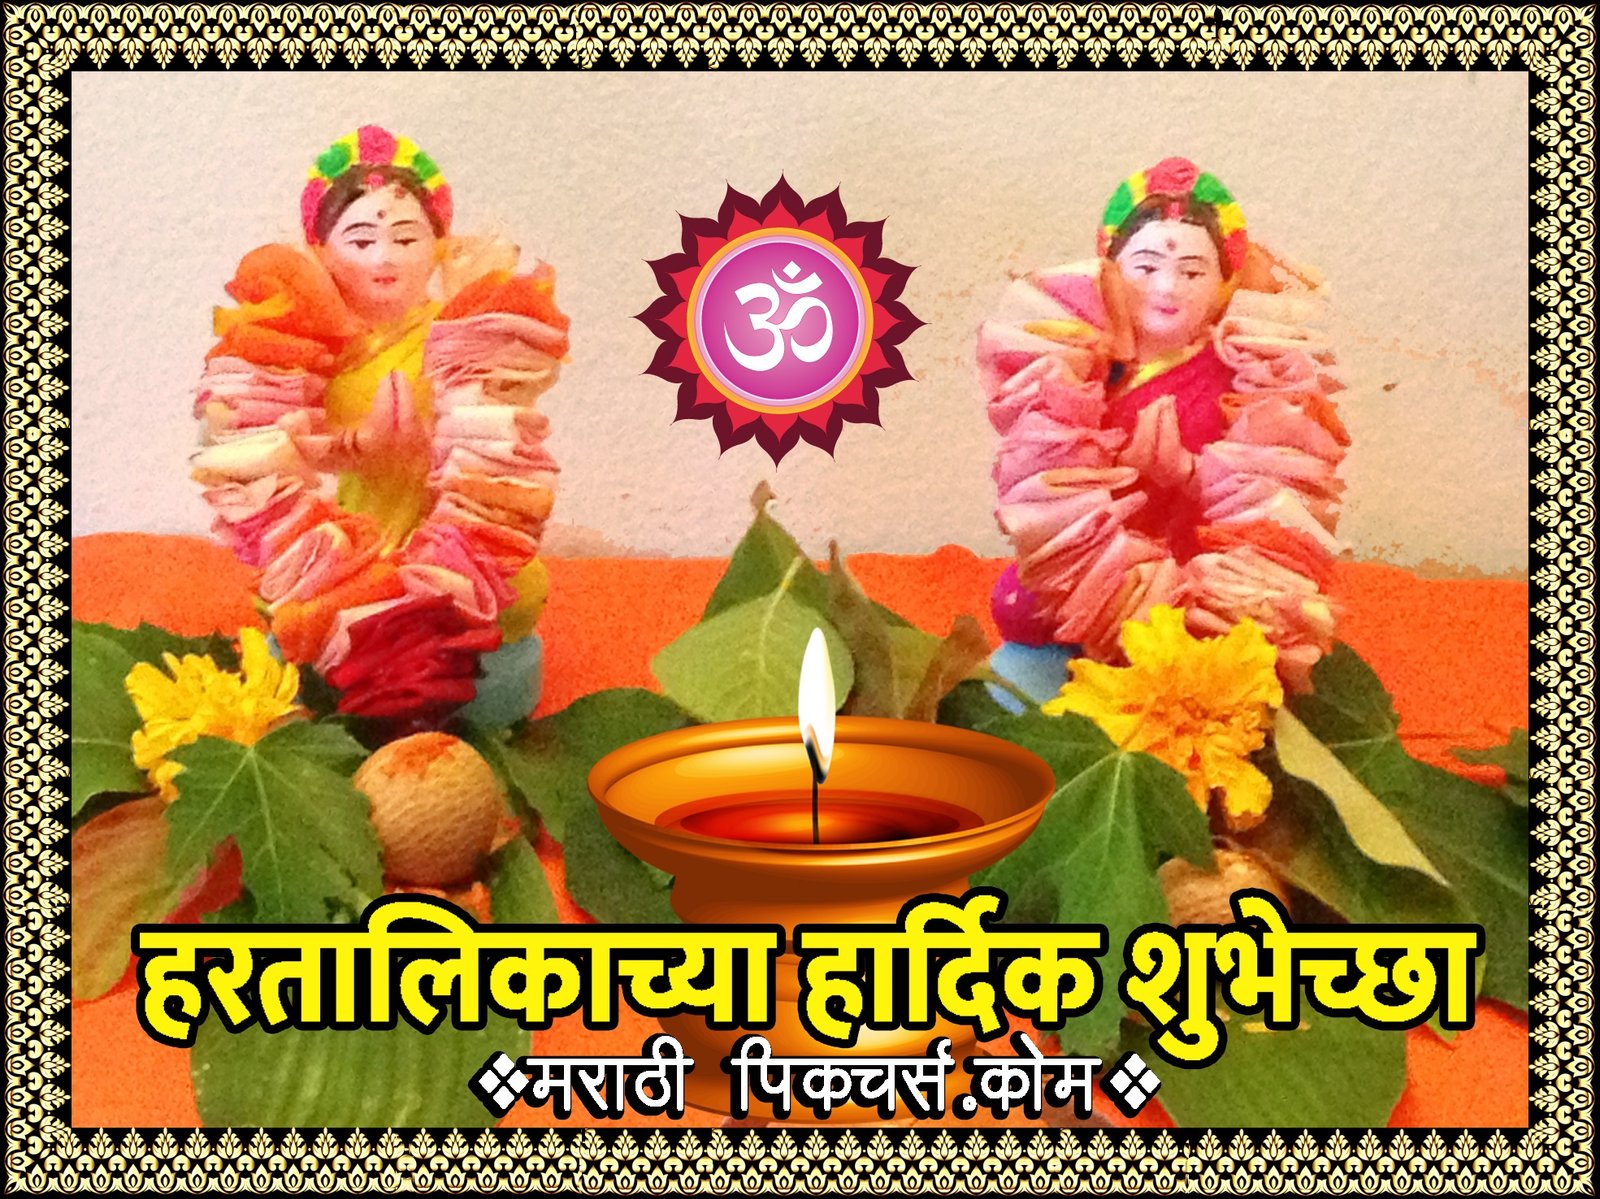 5 Hartalika Pictures In Marathi Marathi Images Marathi Wishes And Greetings 0937